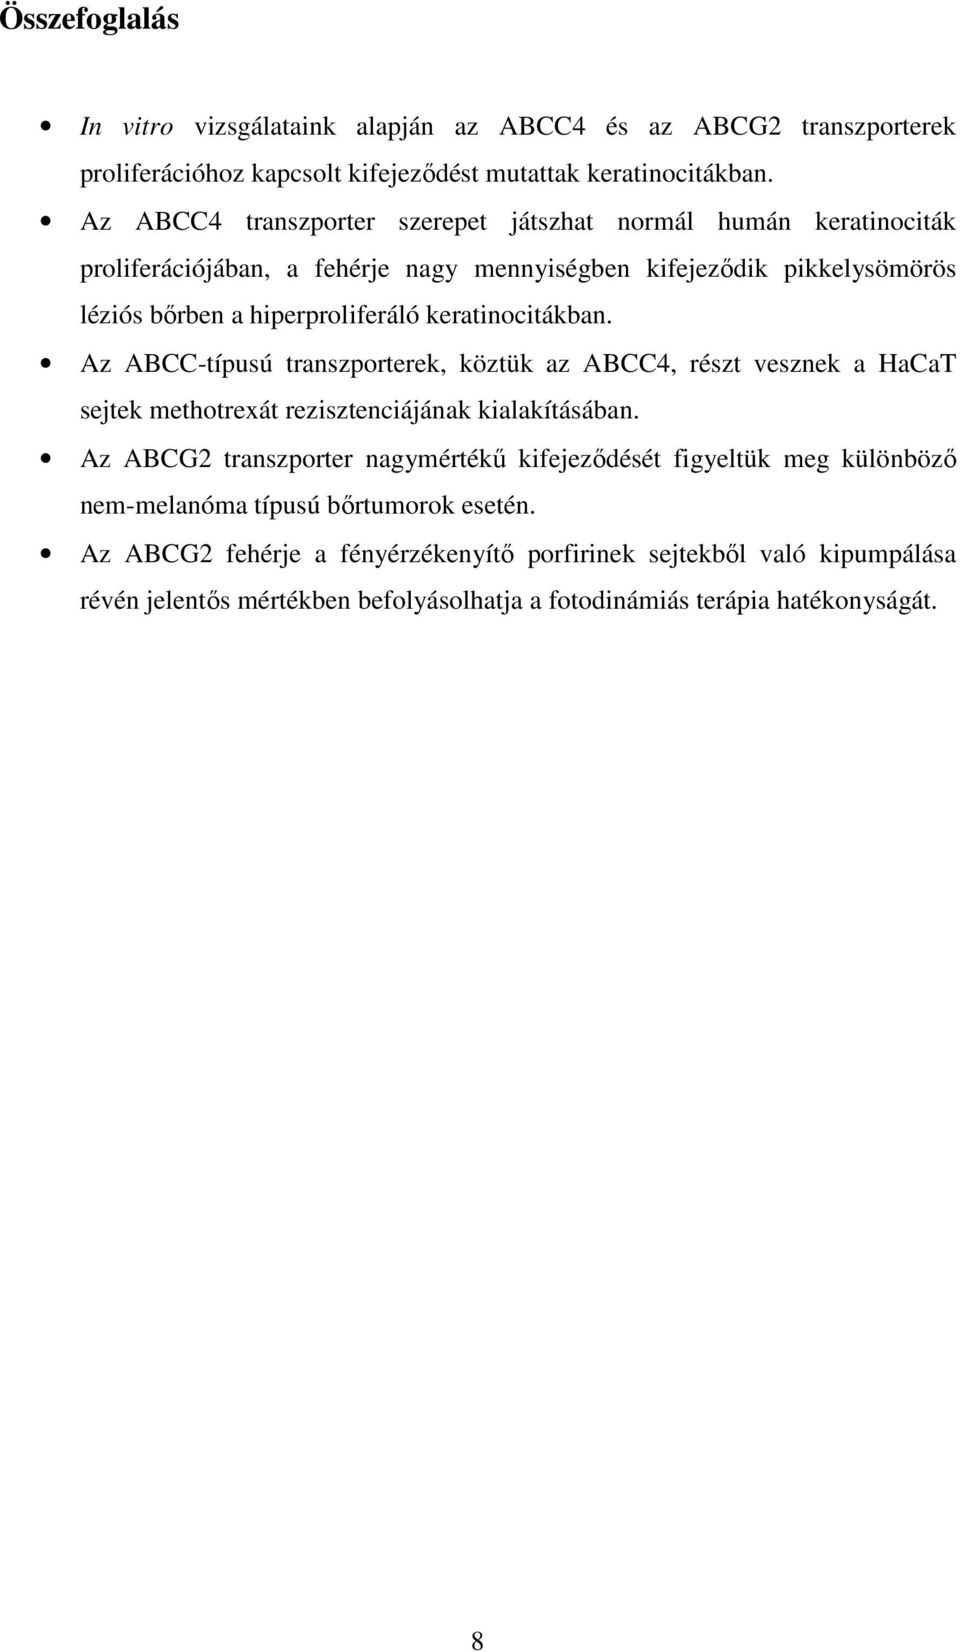 keratinocitákban. Az ABCC-típusú transzporterek, köztük az ABCC4, részt vesznek a HaCaT sejtek methotrexát rezisztenciájának kialakításában.